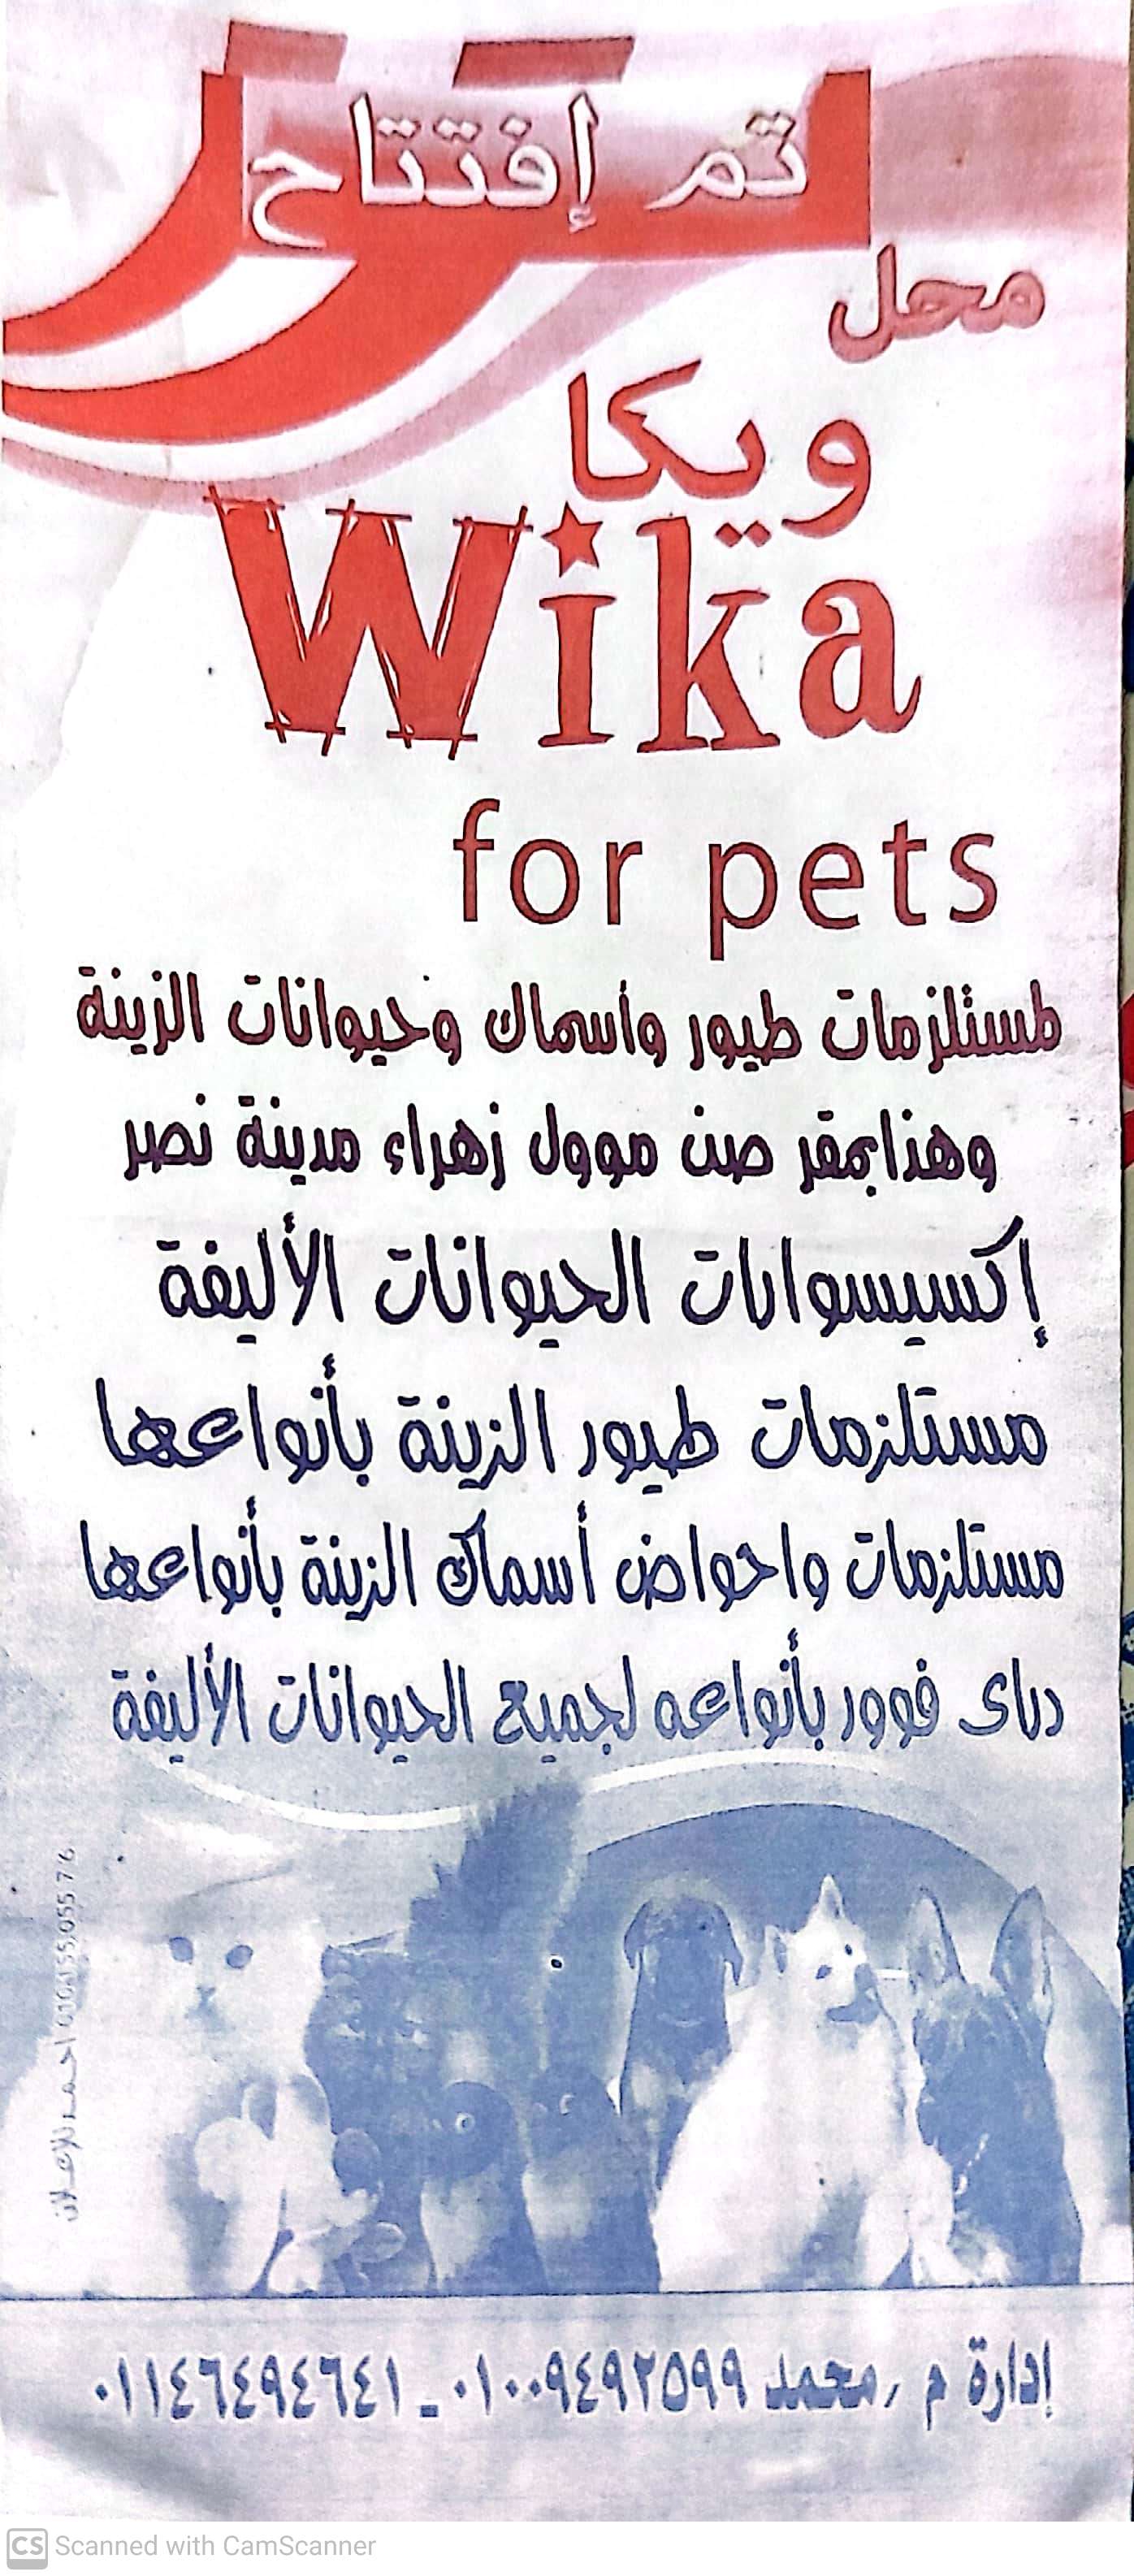 محل ویکا Wika for pets